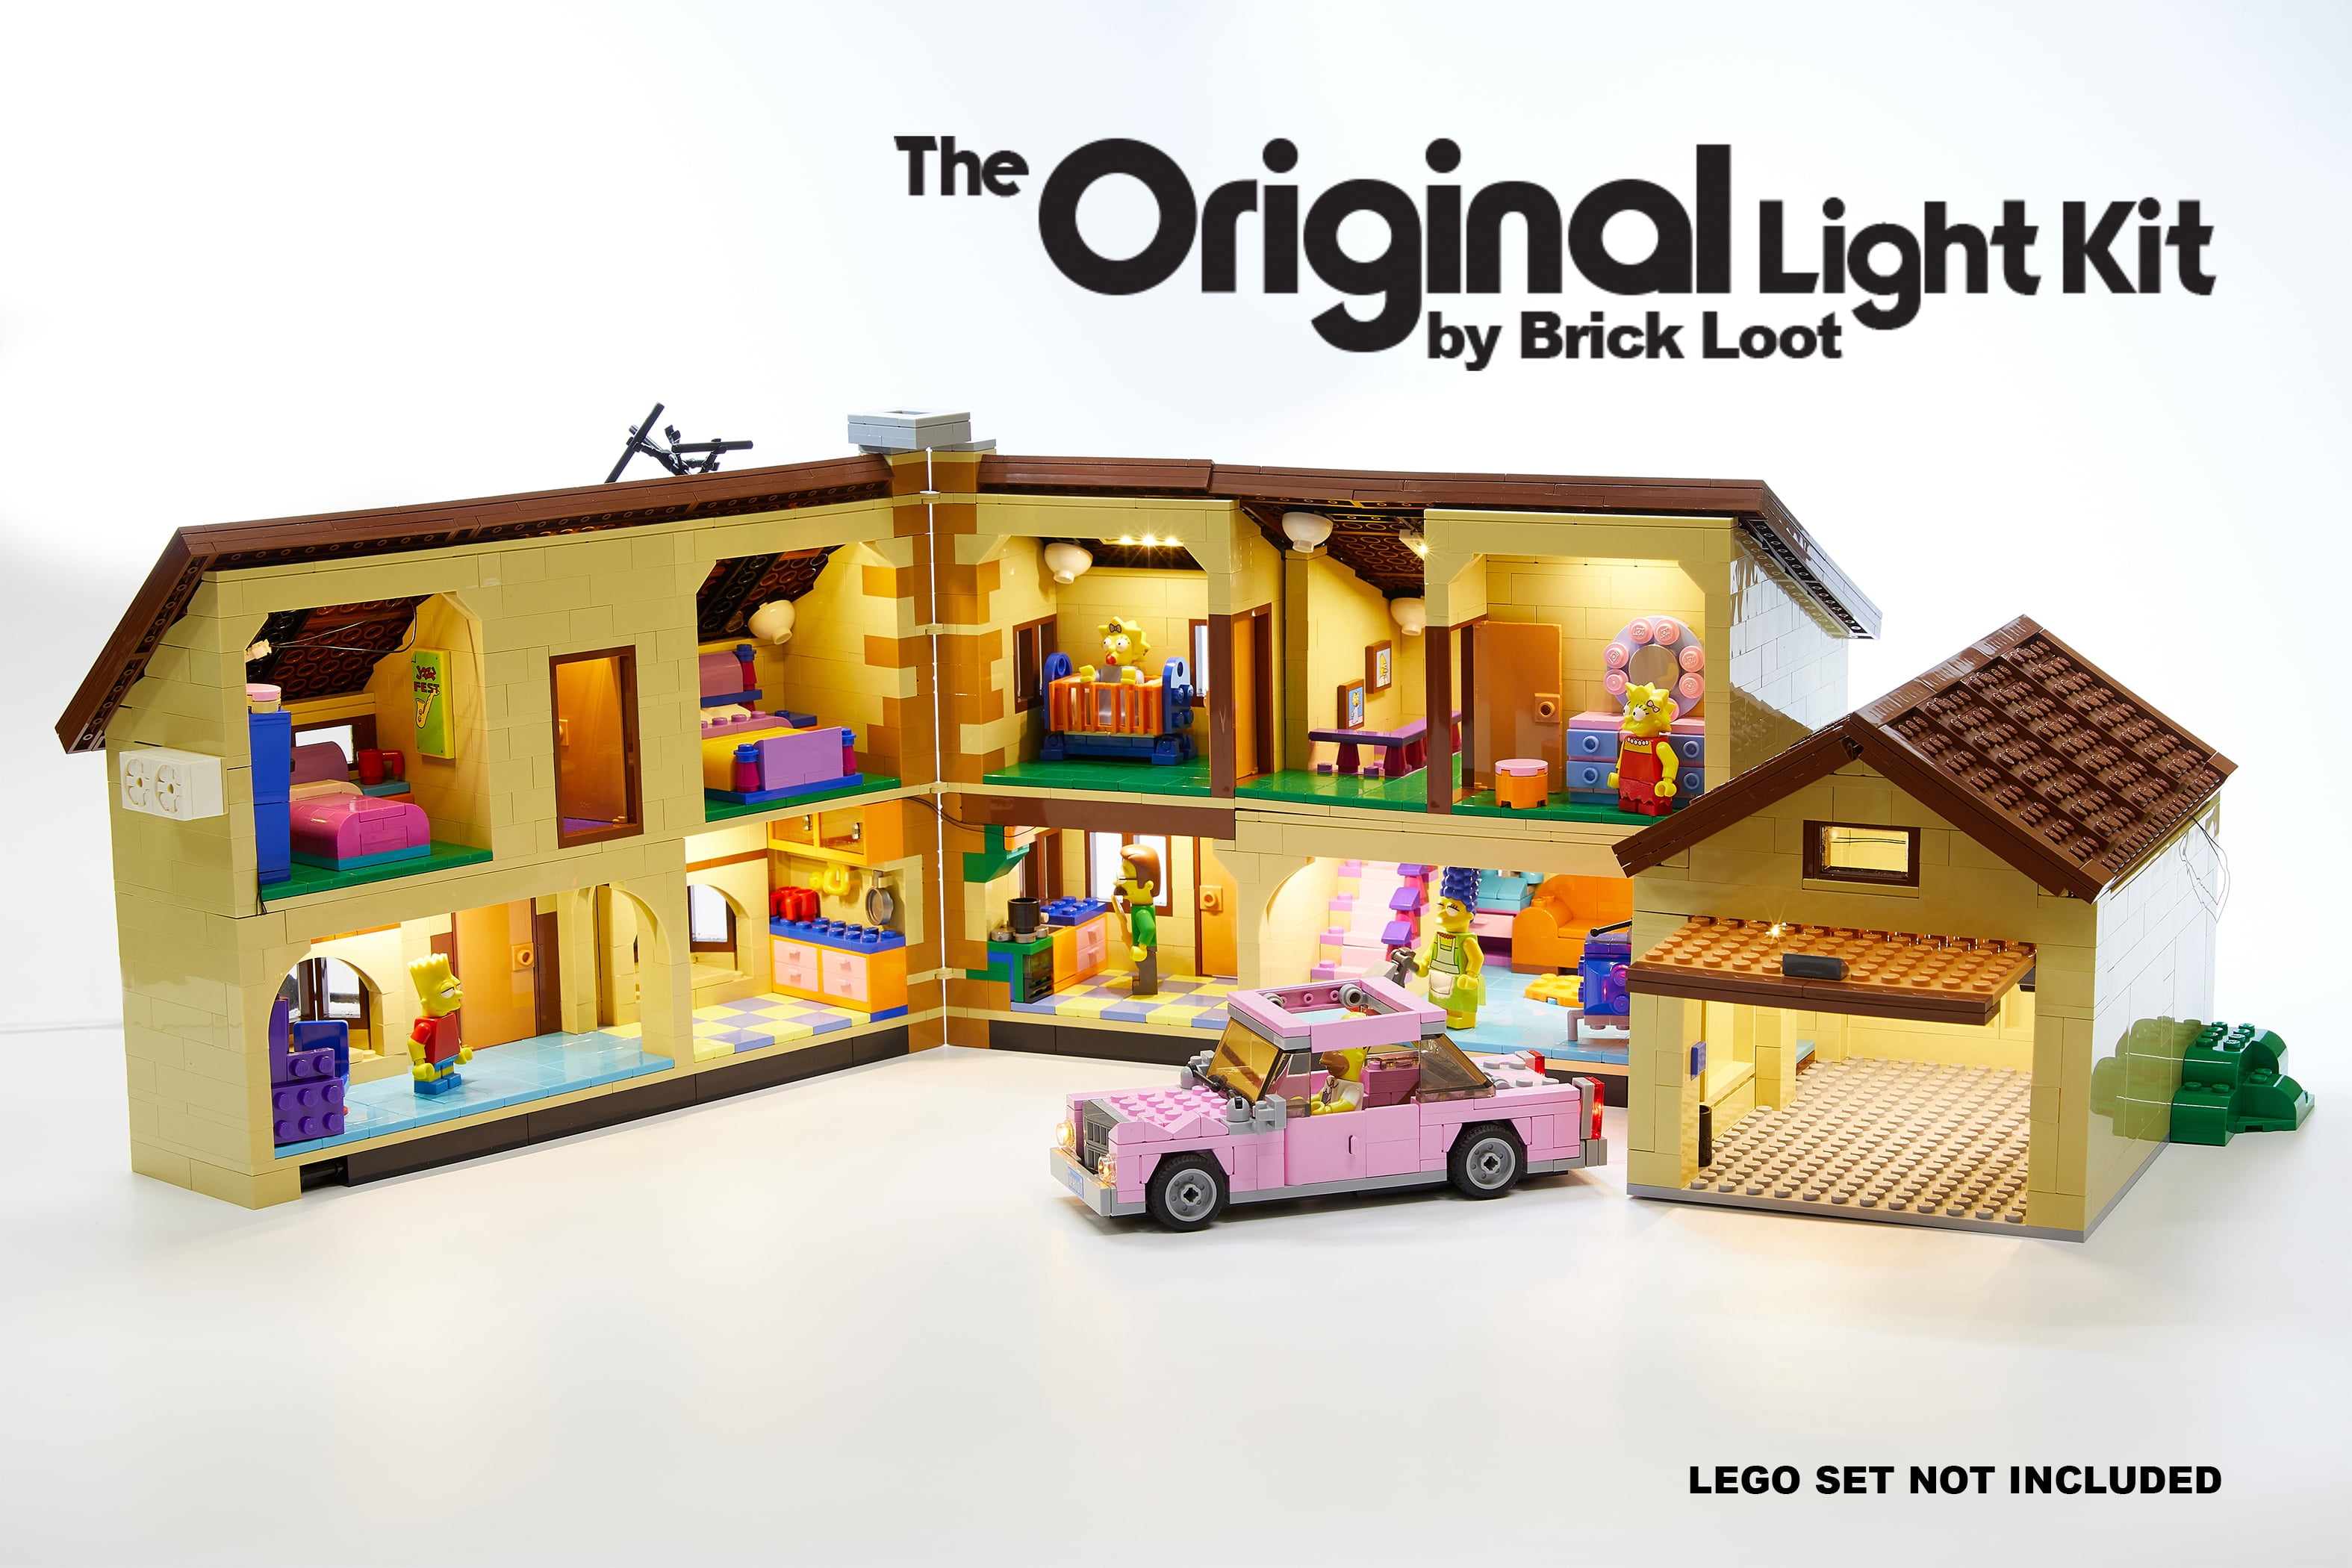 Fantasifulde Tæller insekter radikal Brick Loot Lighting Kit for Your Lego Simpson's House Set 71006 (Lego Set  Not Included) - Walmart.com